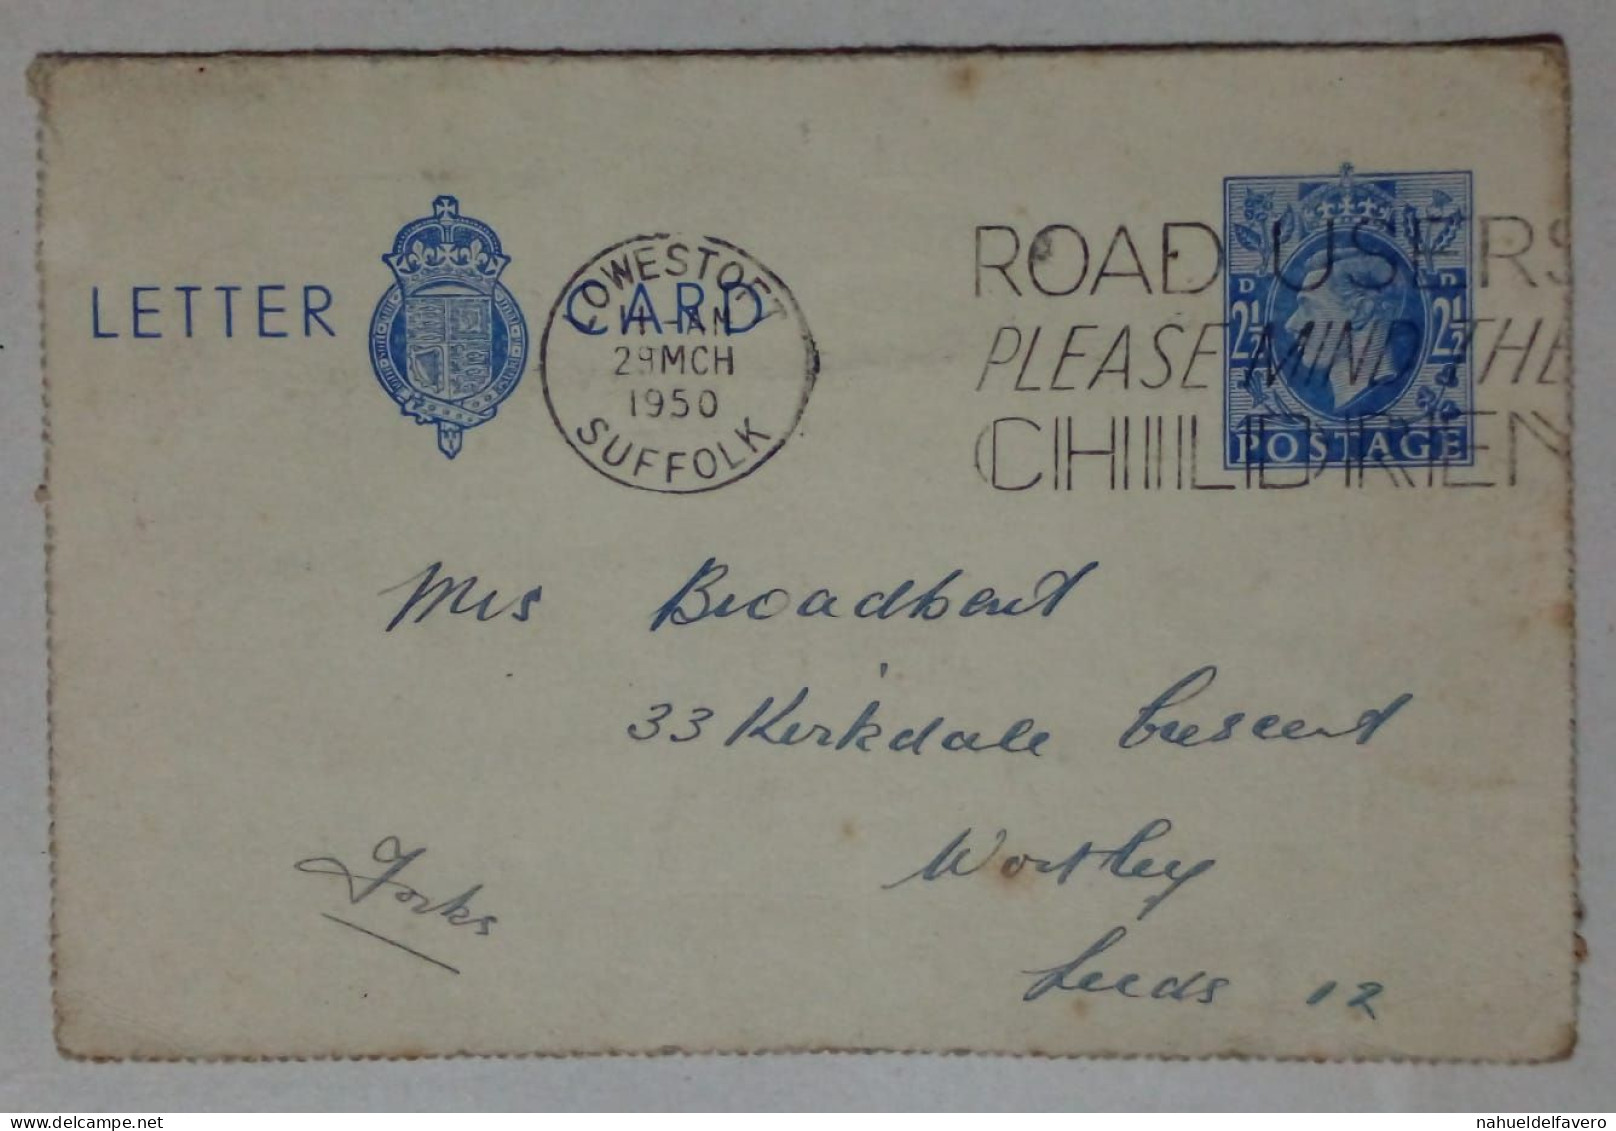 Grande-Bretagne - Carte-lettre Circulée (1950) - Gebruikt